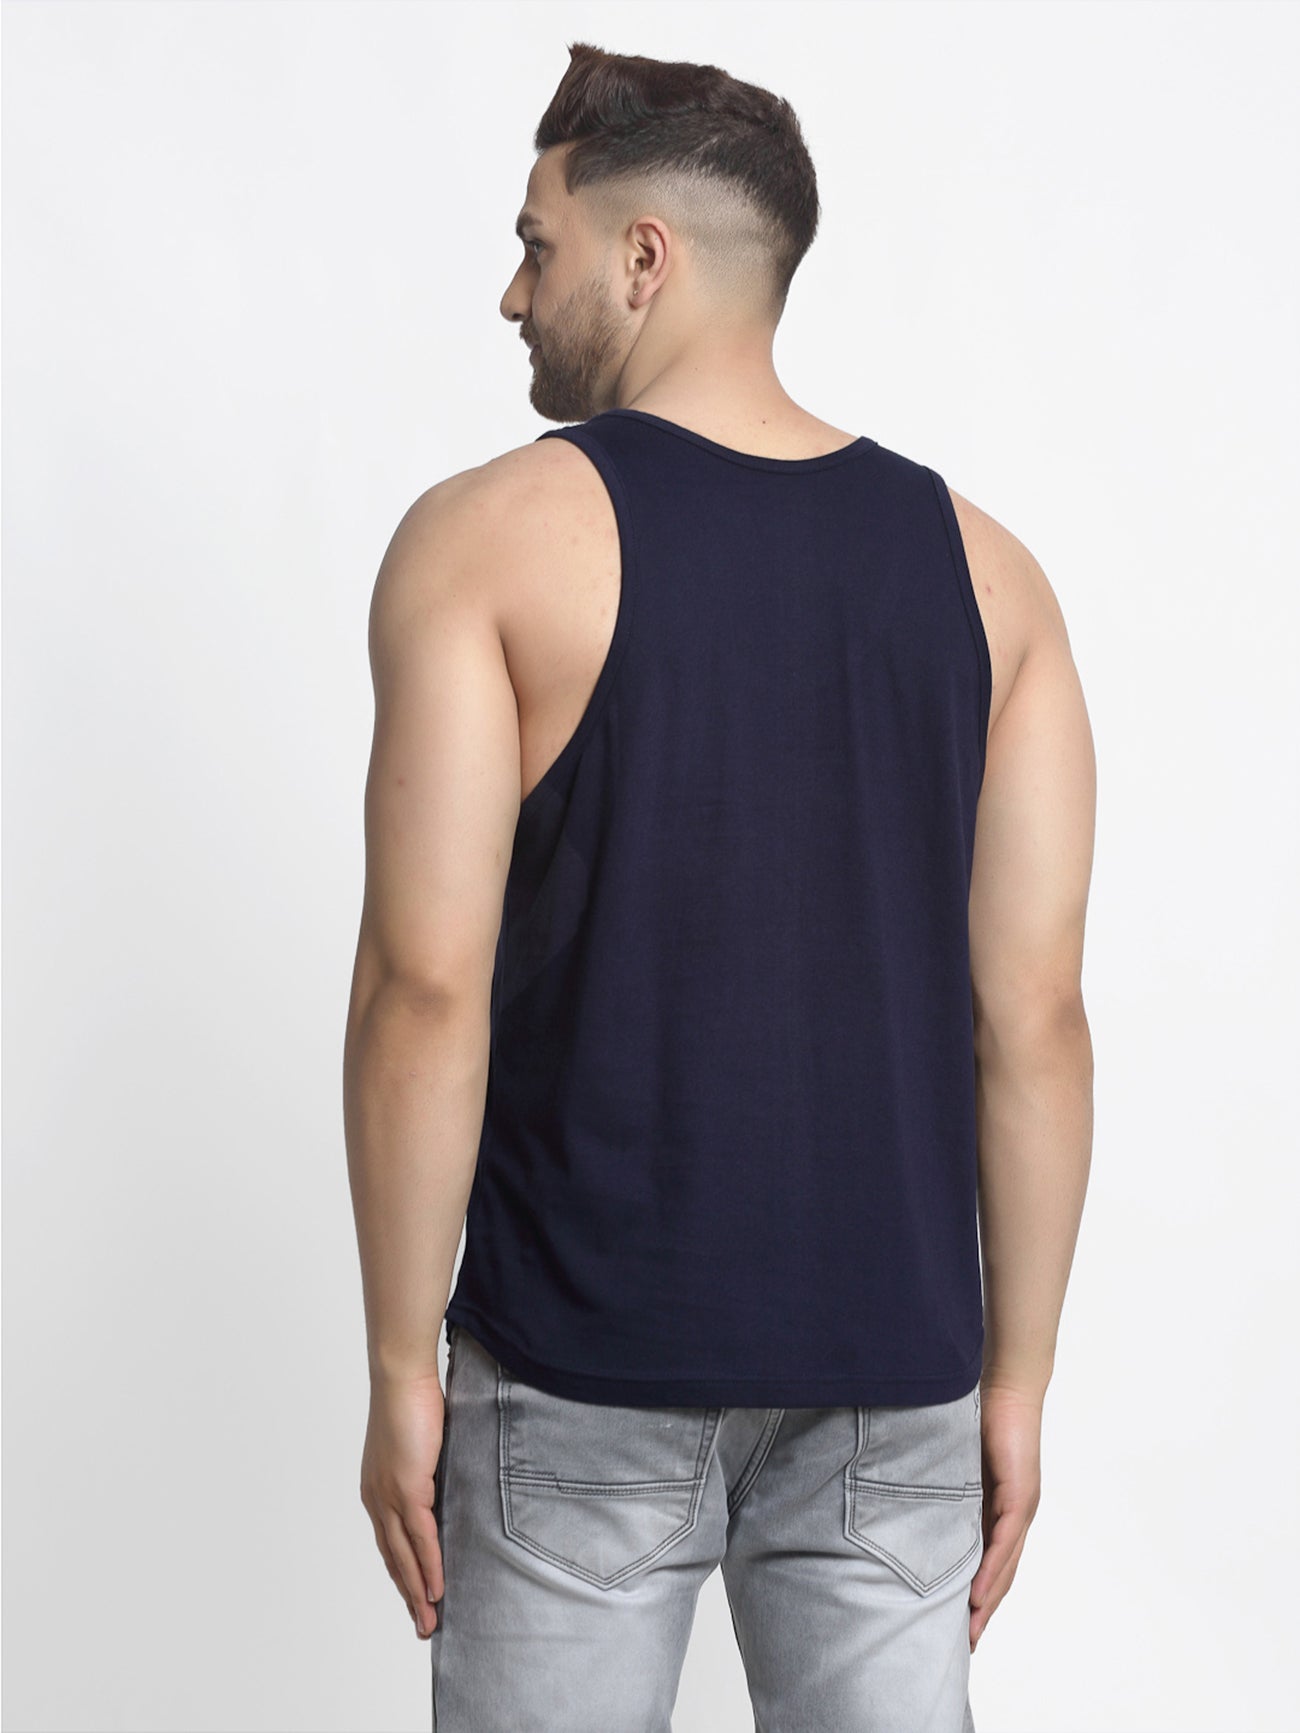 Men's Pack of 2 Grey & Navy Printed Gym Vest - Friskers